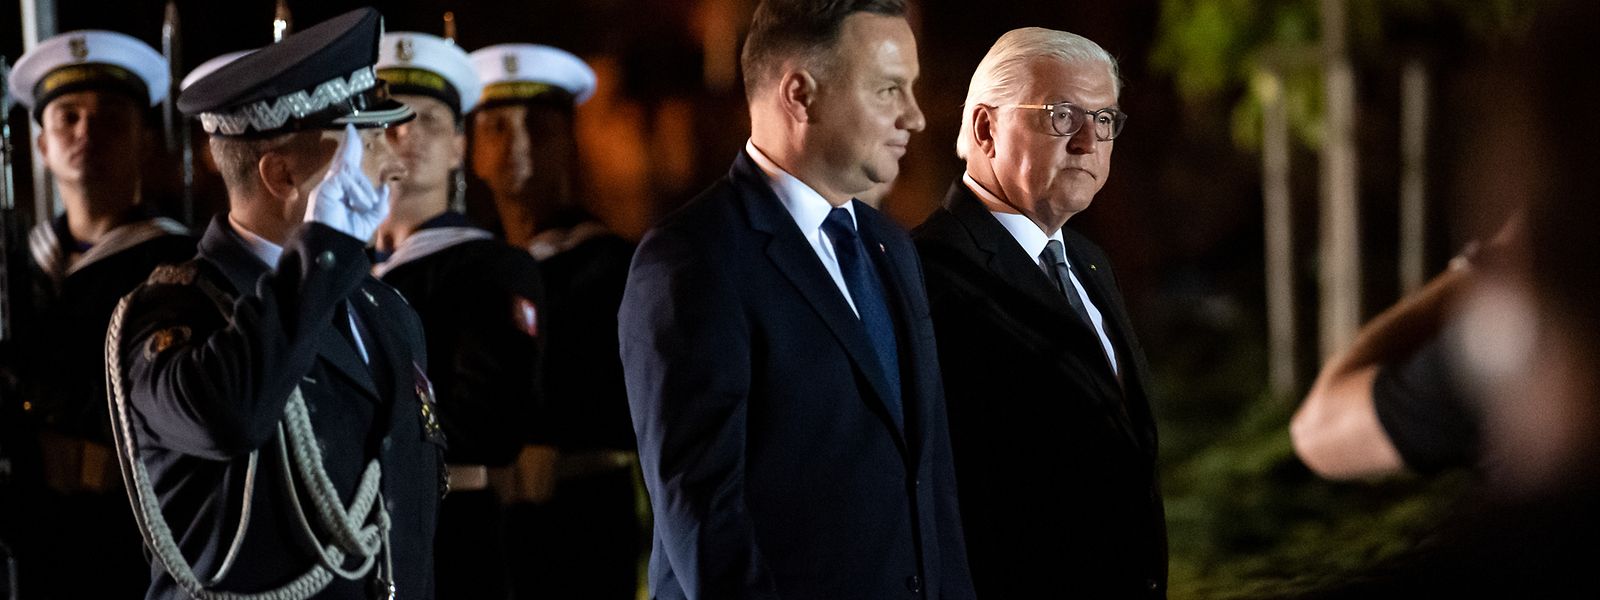 Der deutsche Bundespräsident Frank-Walter Steinmeier (r.) und der polnische Präsident Andrzej Duda (2.v.r.) nehmen an einer militärischen Zeremonie zum Auftakt der Gedenkfeierlichkeiten der Stadt Wielun zum 80. Jahrestag des Beginns des Zweiten Weltkriegs teil.